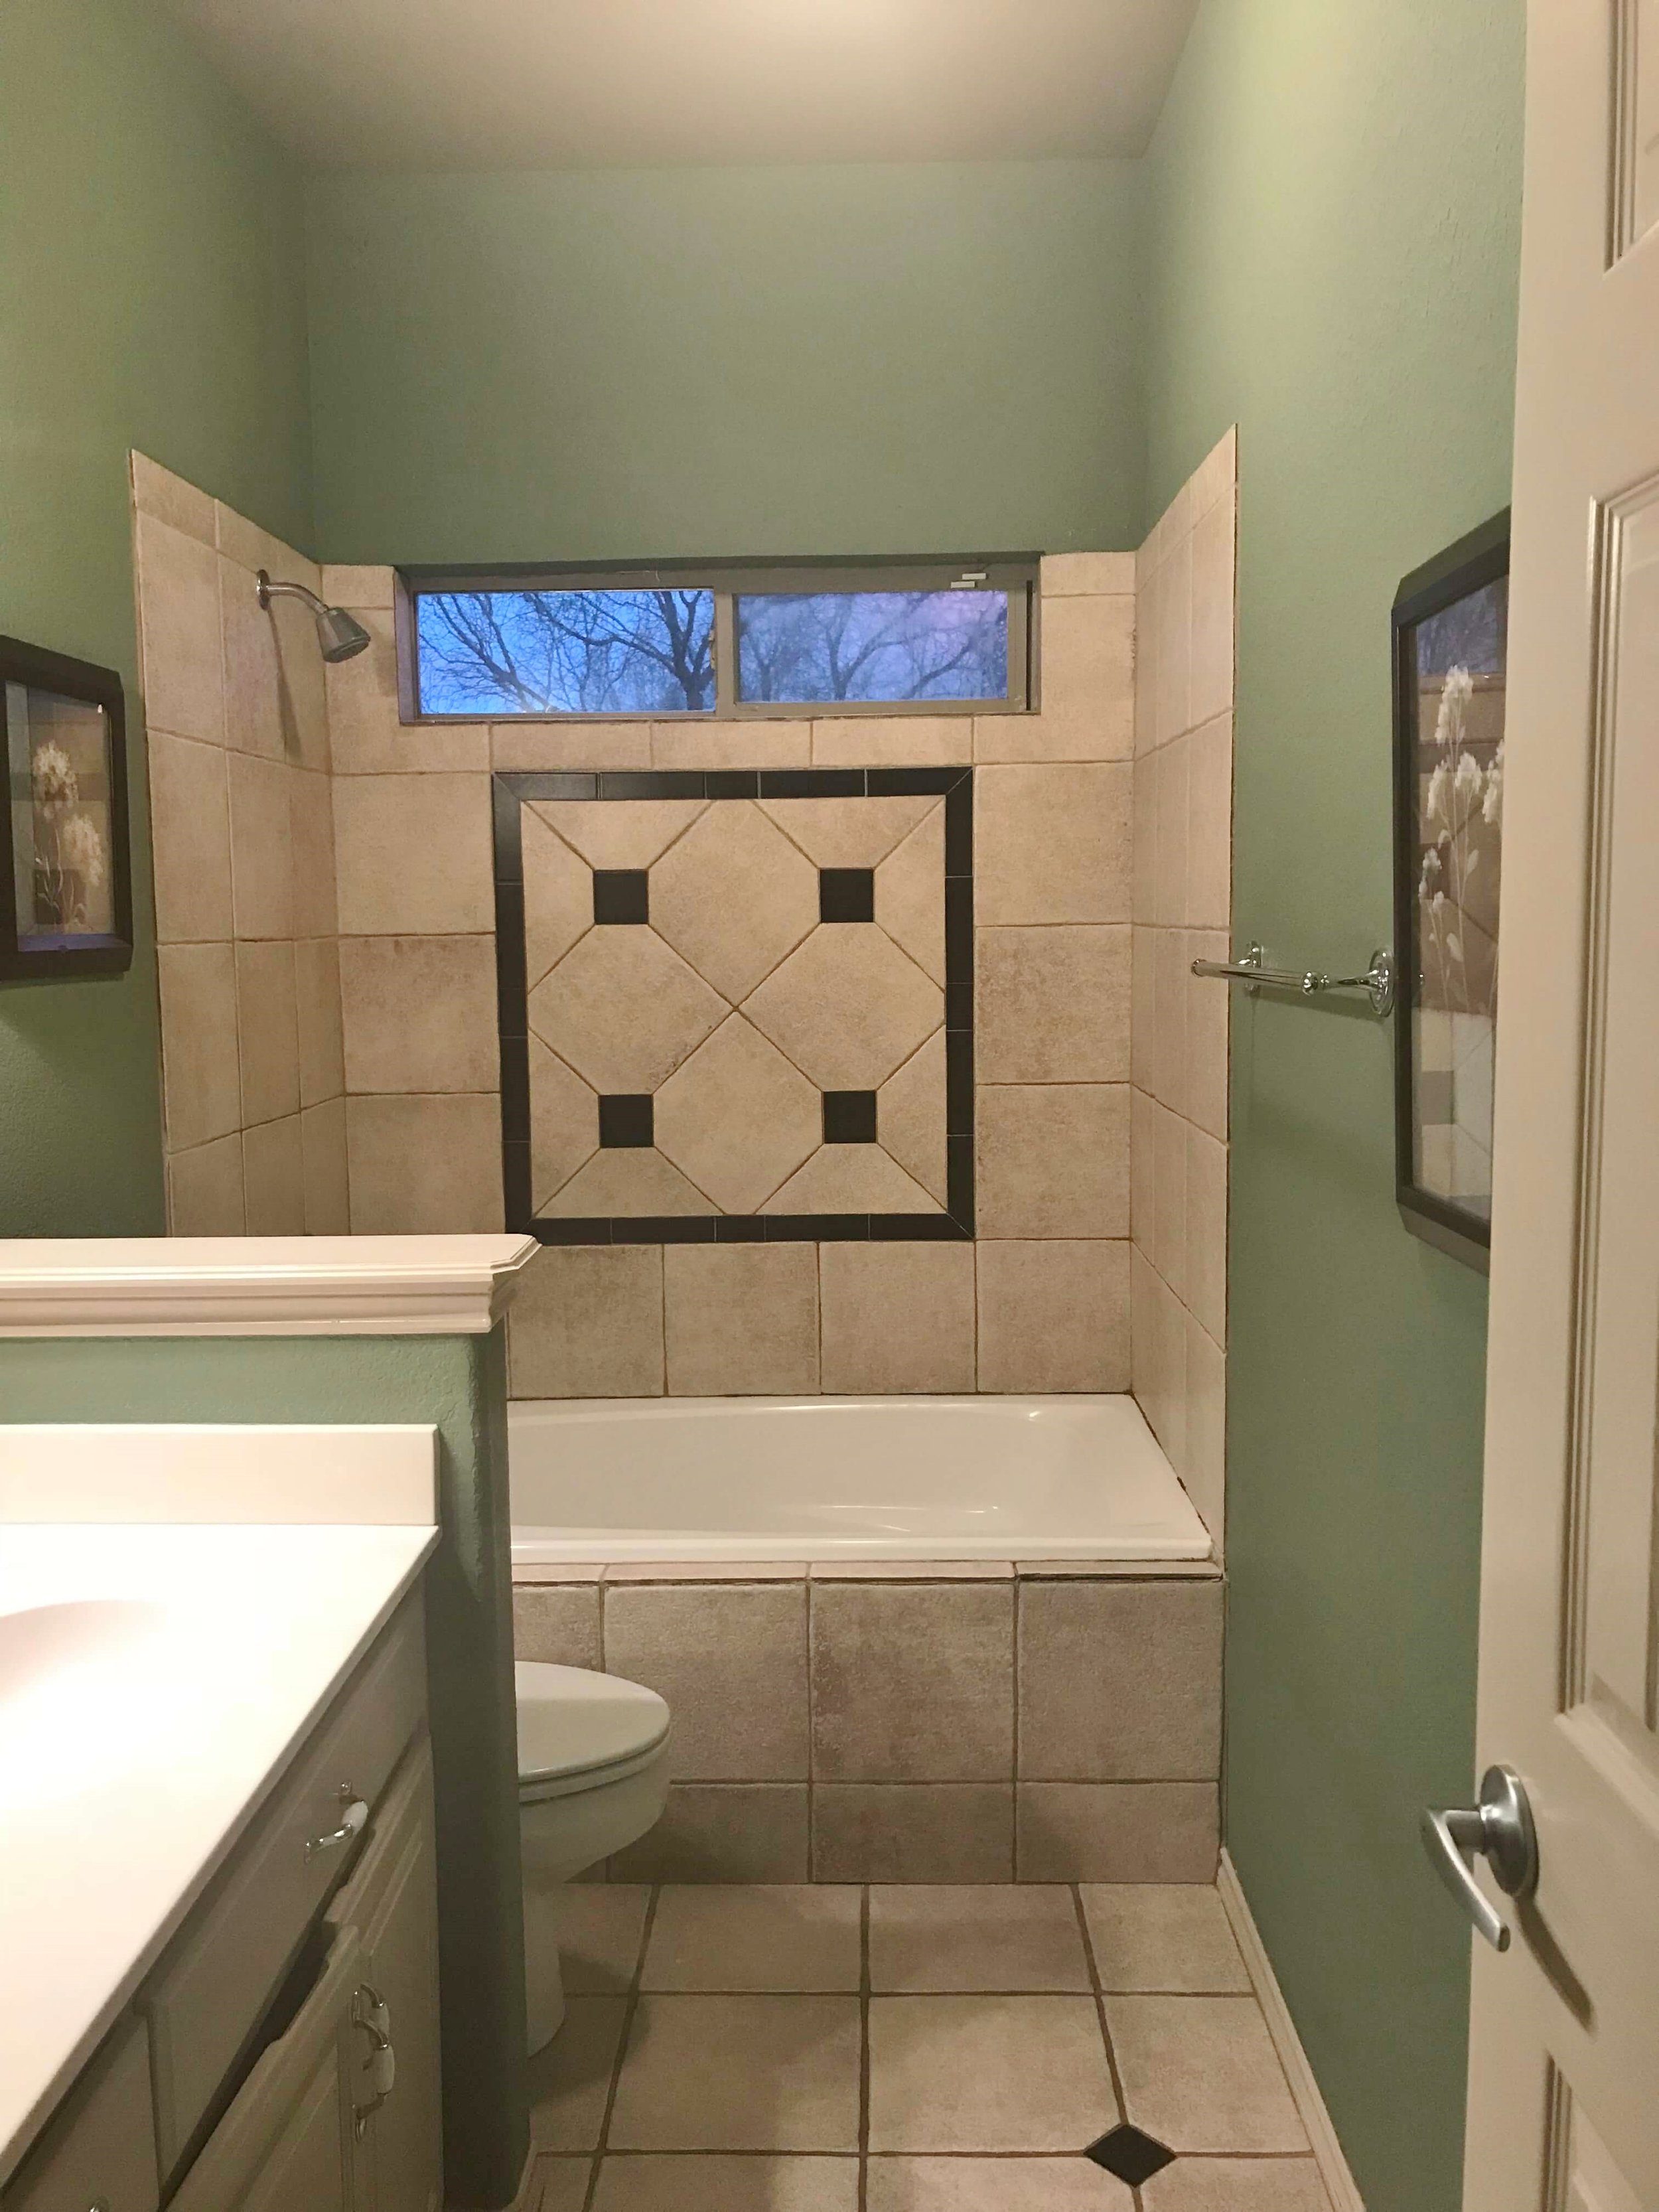 Design Plan For A 5 X 10 Standard Bathroom Remodel Designed